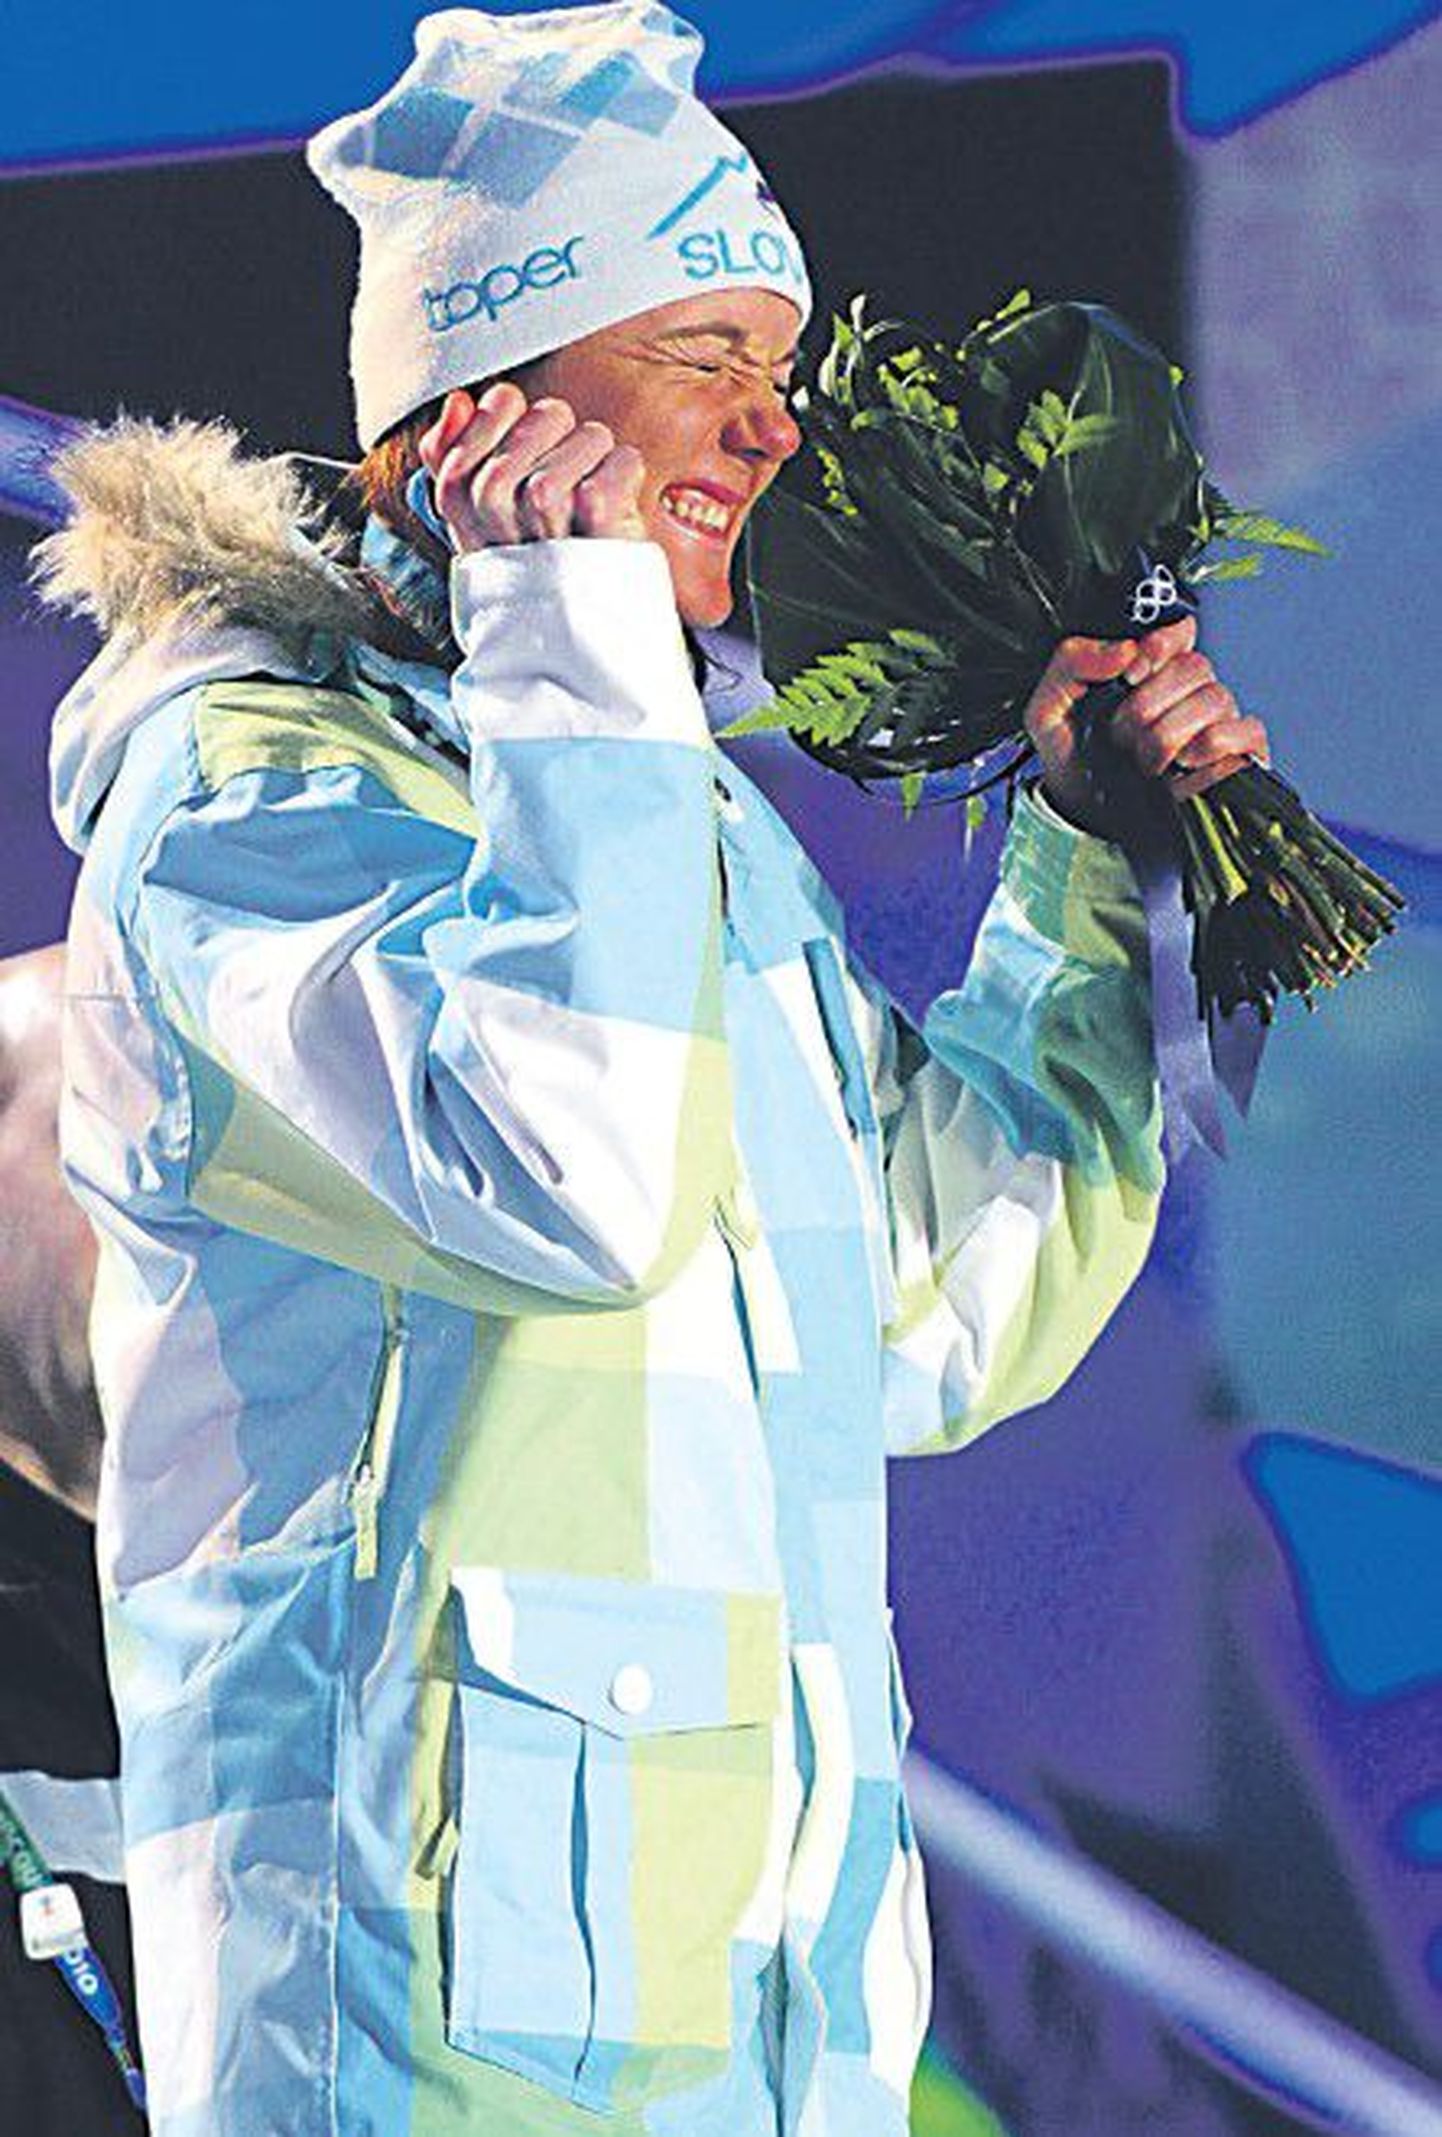 Мужественная словенская лыжница Петра Майдич (на фото слева) завоевала бронзовую медаль Олимпийских игр 2010 года в Ванкувере, выйдя на старт со сломанными ребрами. Канадская фигуристка Джоанни Рошетт целует бронзовую медаль, полученную в женском одиночном катании.